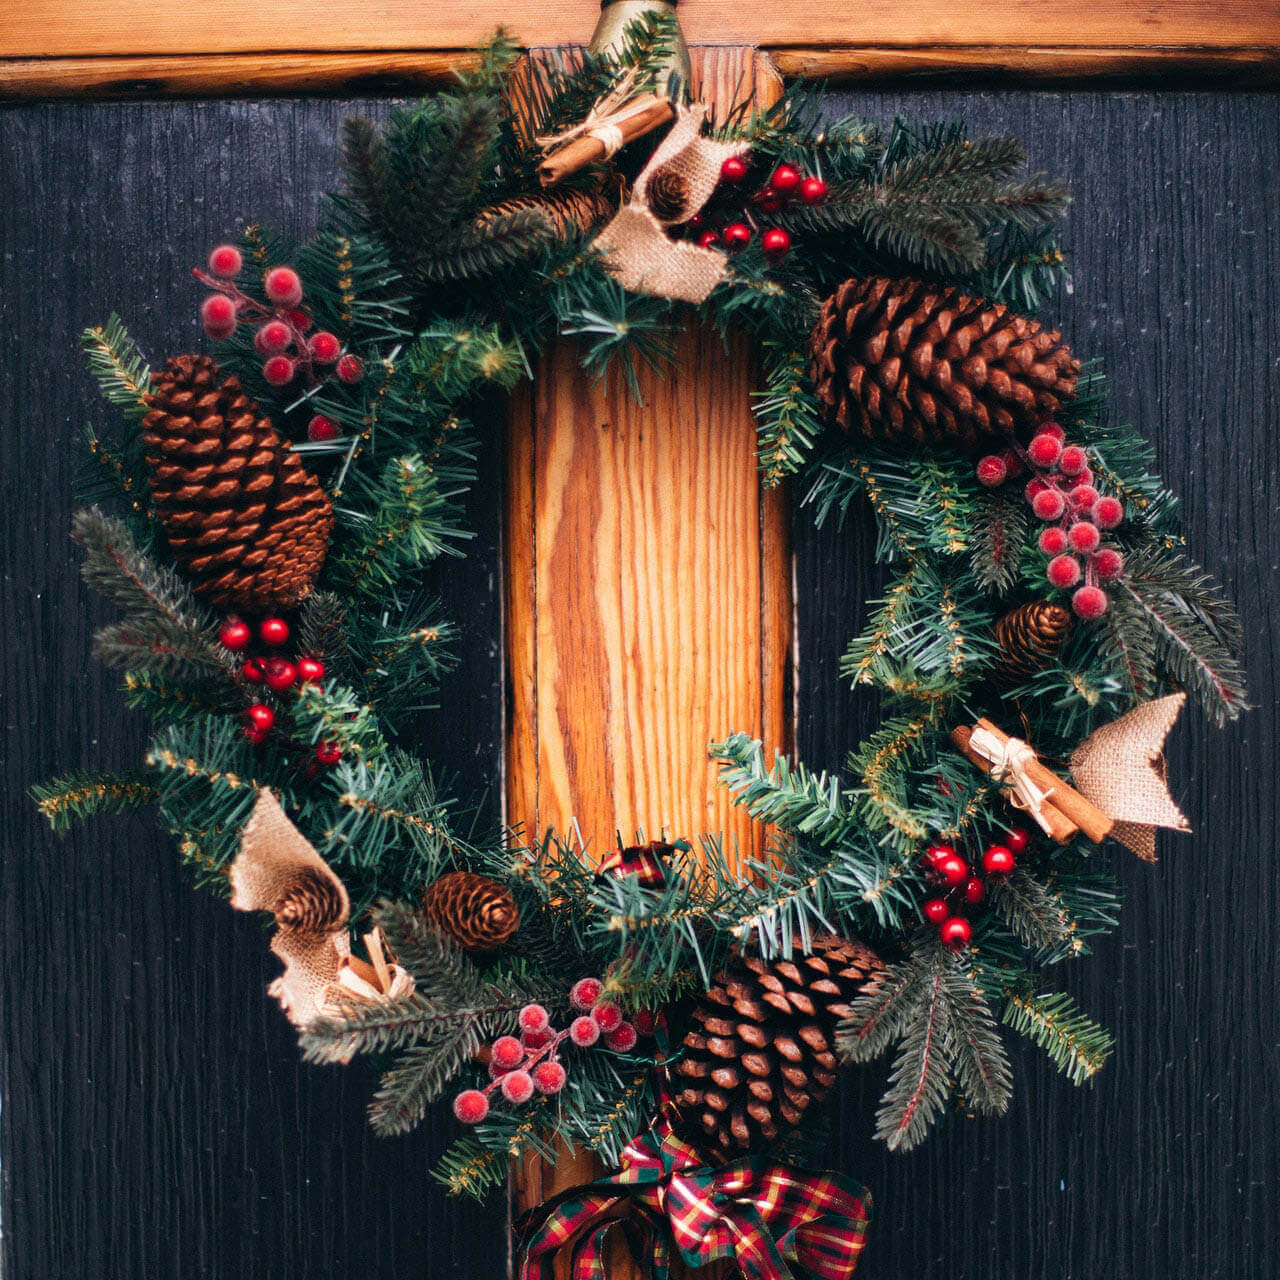 Pinecone wreath on door